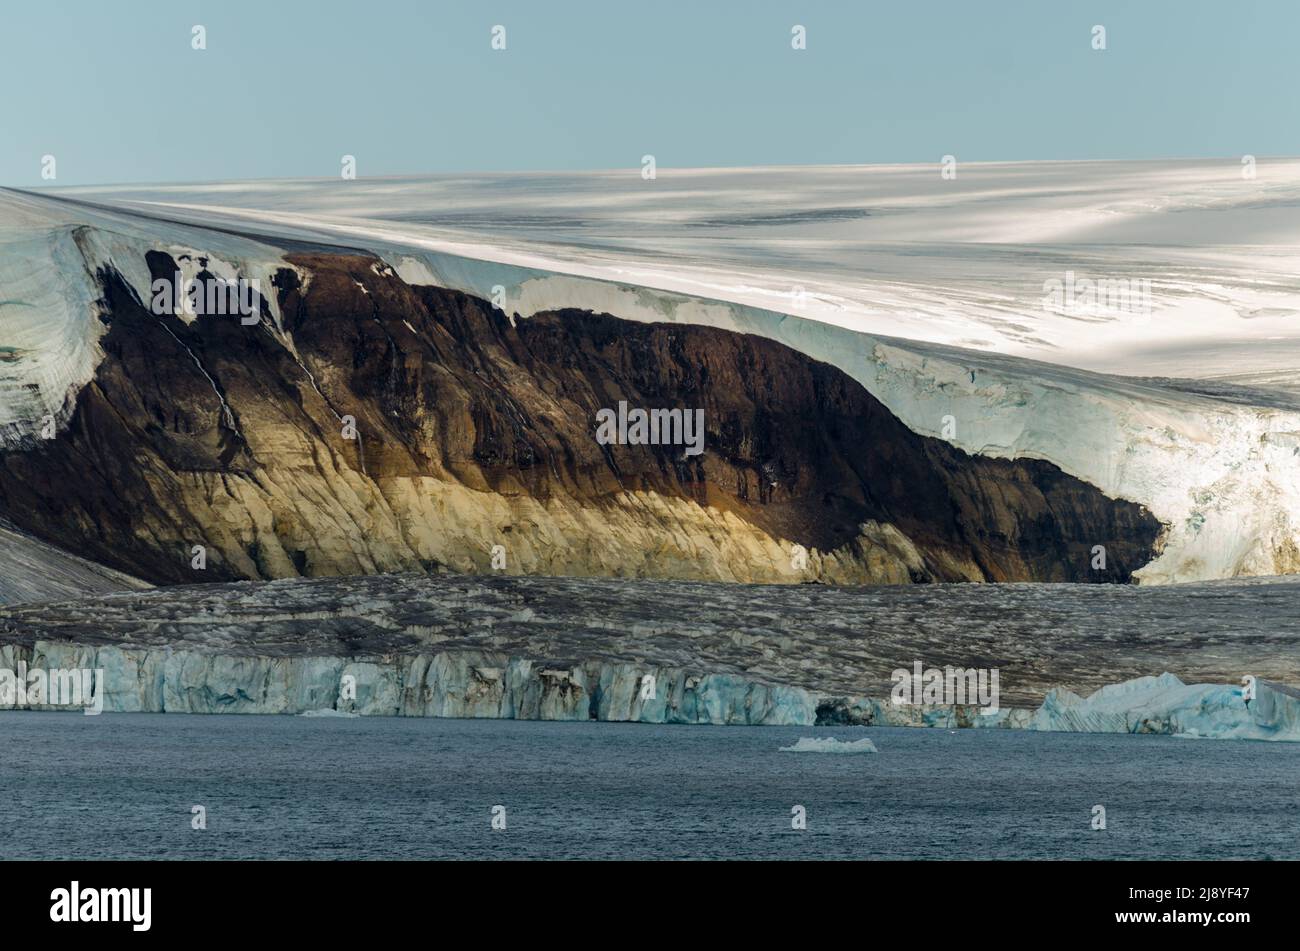 Il ritrattamento del ghiaccio rivela una scogliera di roccia sedimentaria di età giurassica sovrastata dalla lava cretacea nello stretto americano, Franz Josef Land, Russia Foto Stock